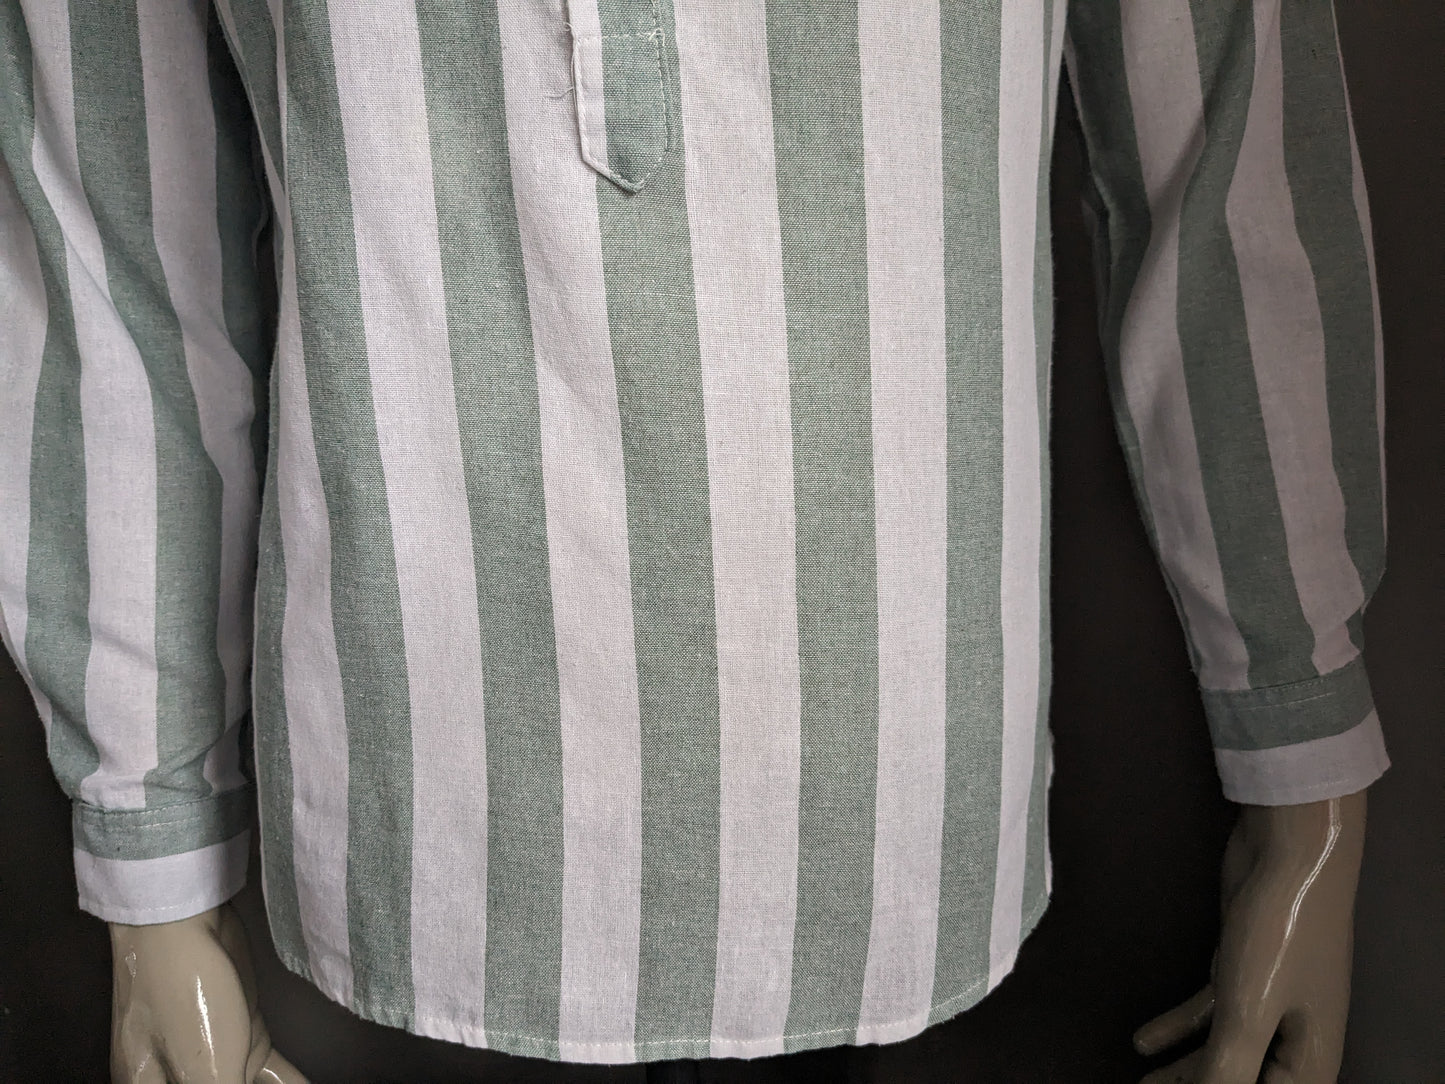 Chemise de chemise sans marque avec agriculteurs / collier surélevé / mao. Green blanc rayé. Taille M / L.